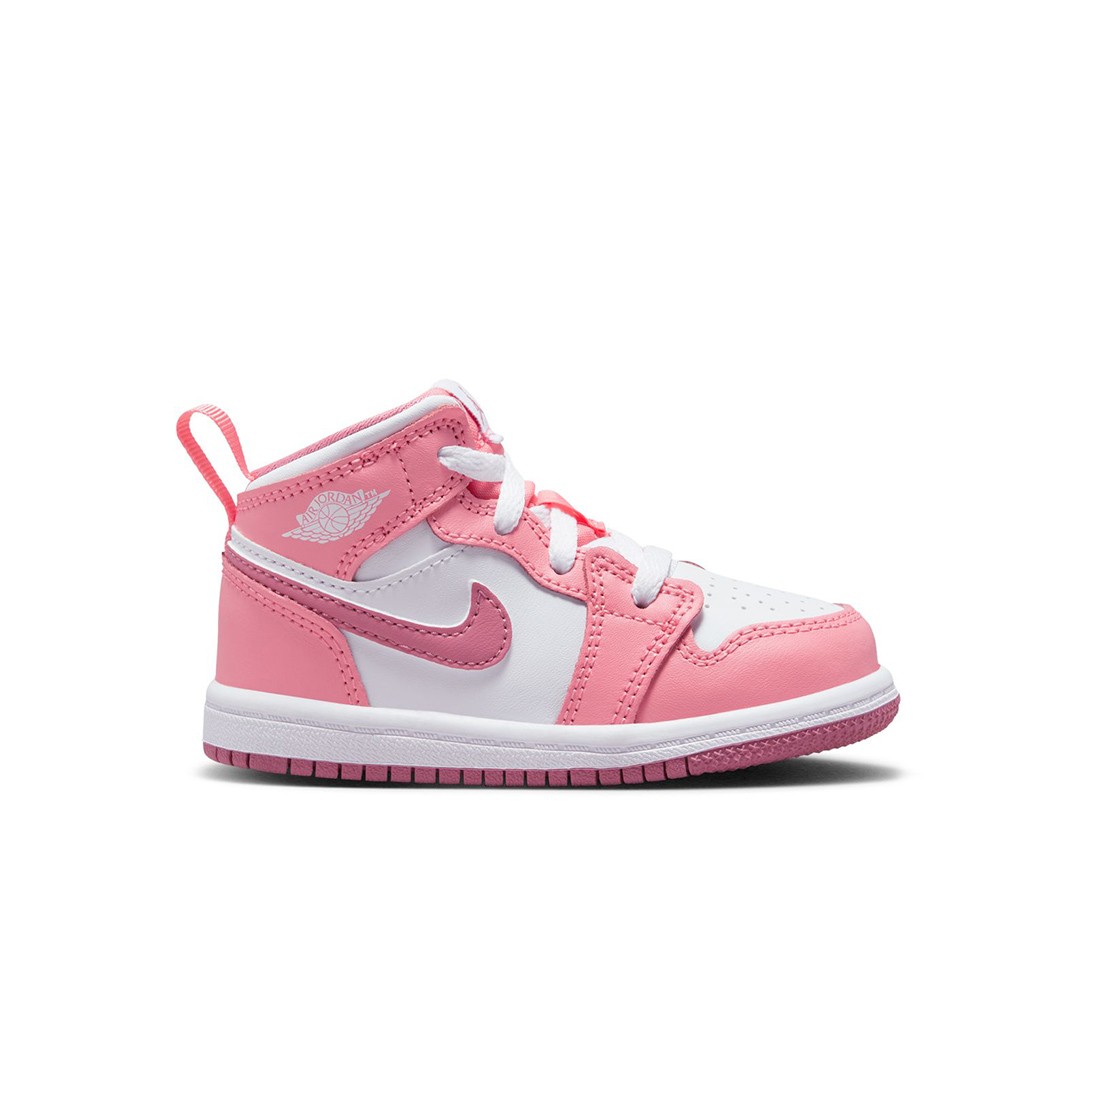 Les Air Jordan 1 Low White Gum Hyper Pink devraient arriver le 1er